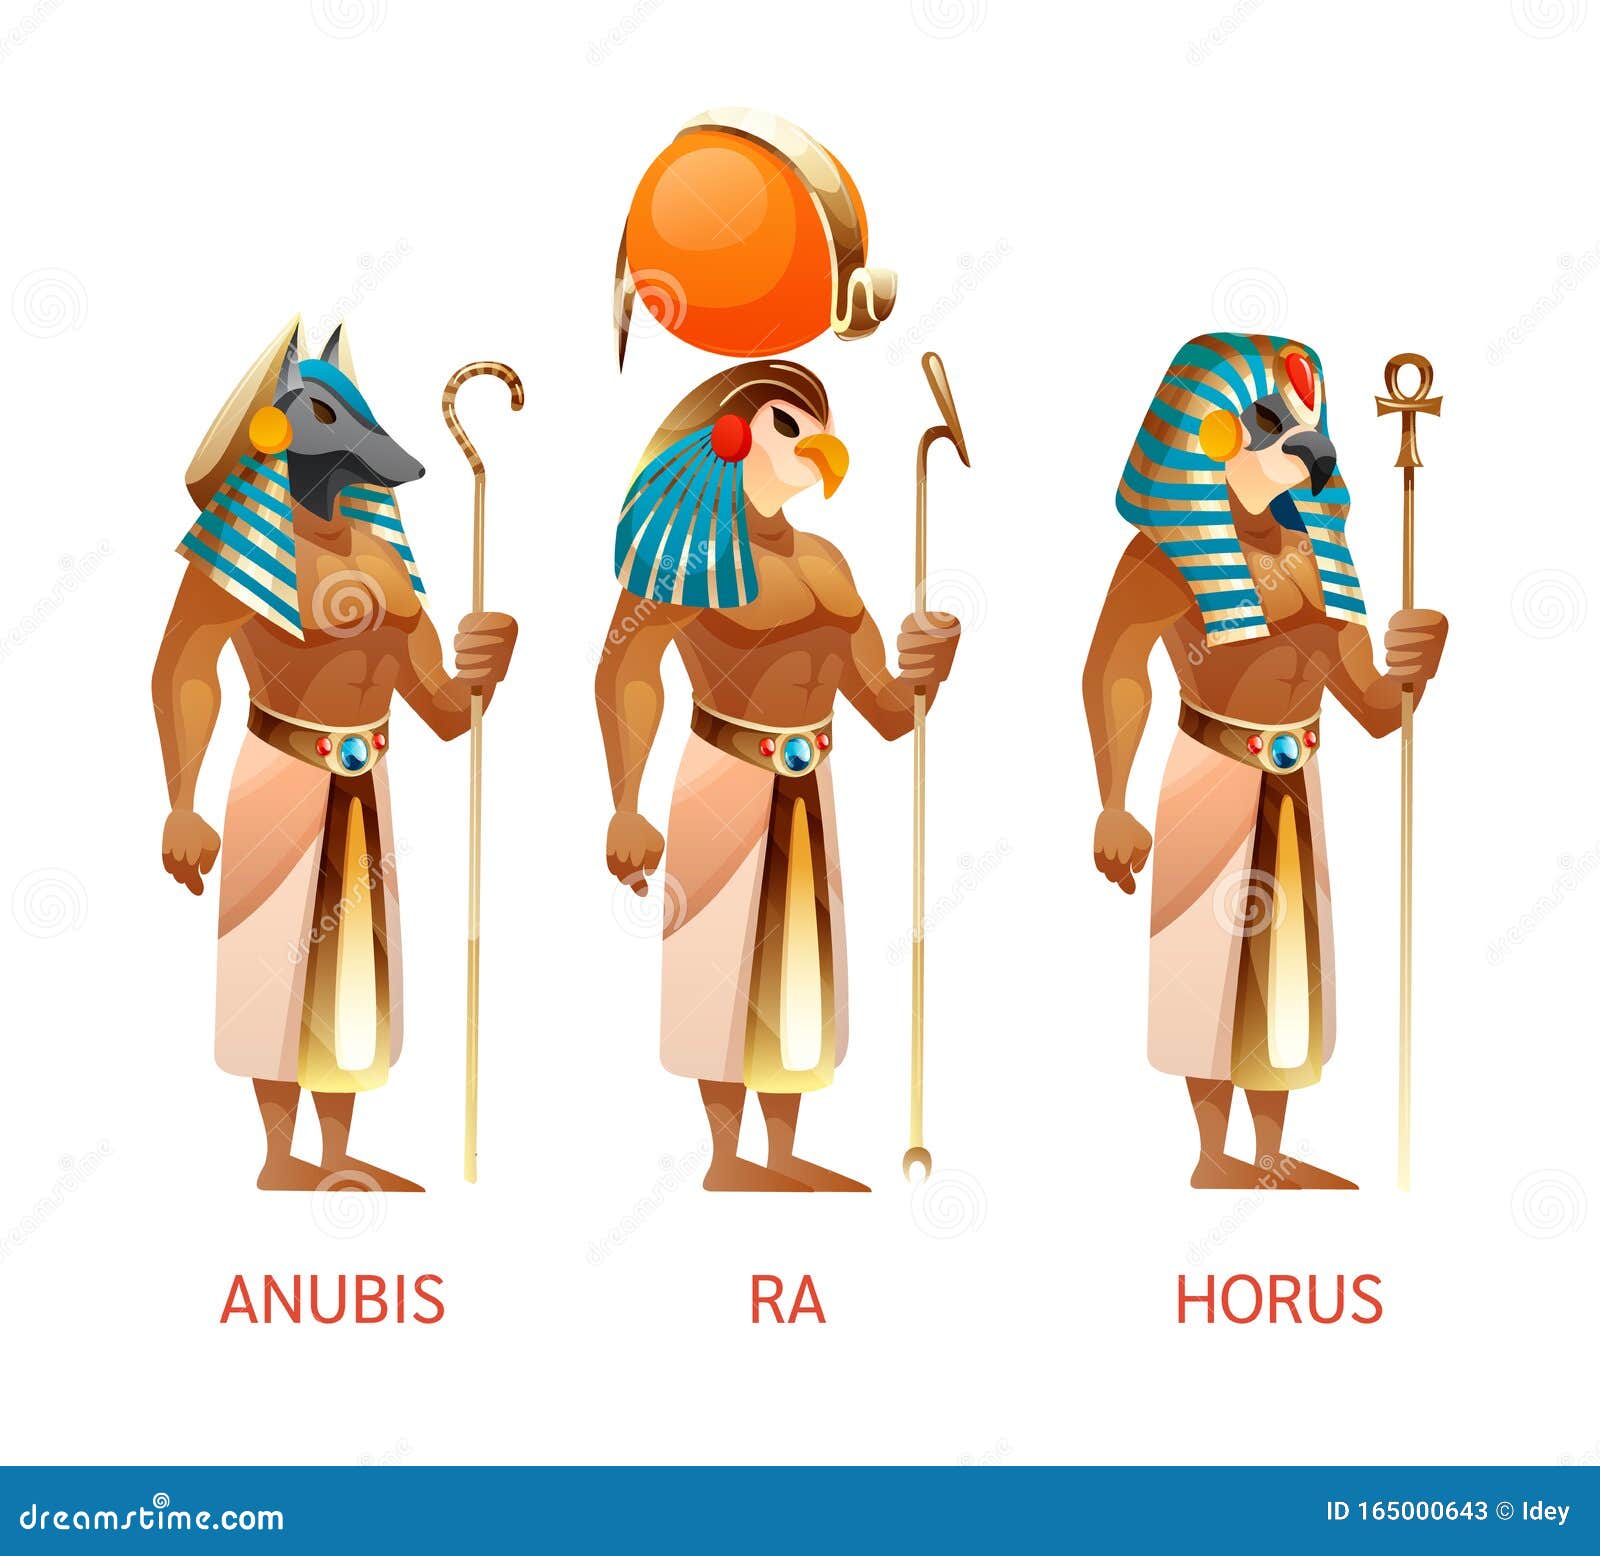 ancient egyptian gods ra, horus, anubis from egyptian mythology religion